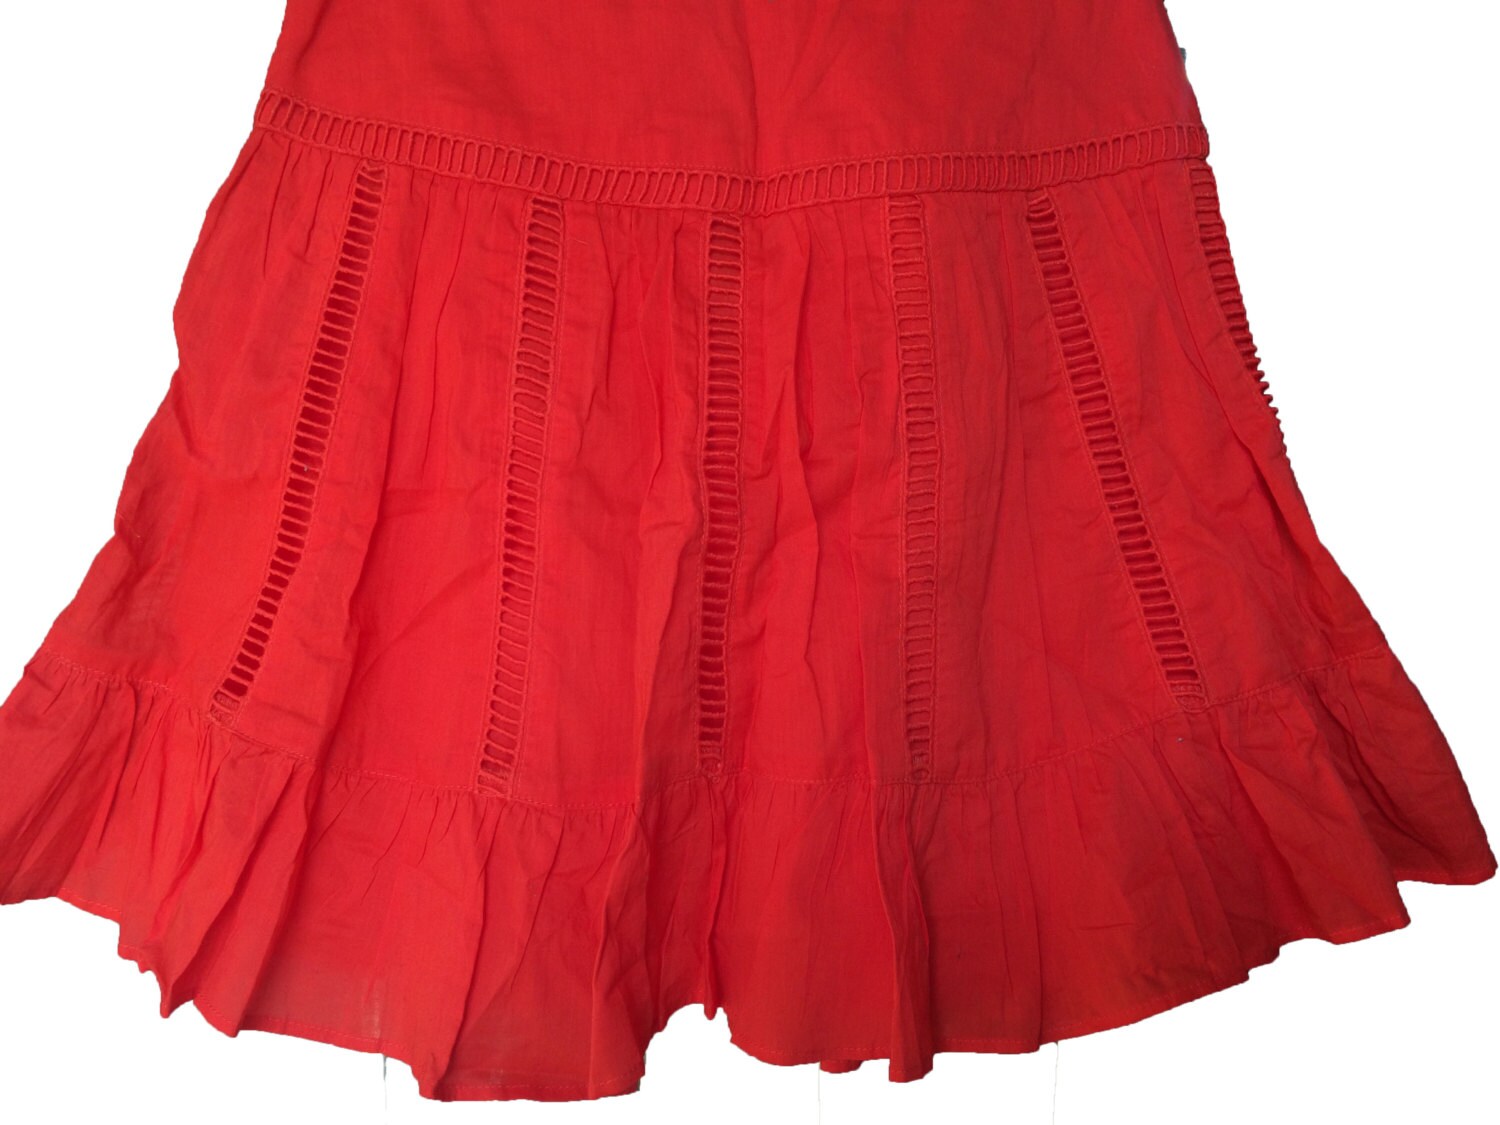 R Skirt short Knee length Mini skirt Indian Bollywood Skirt